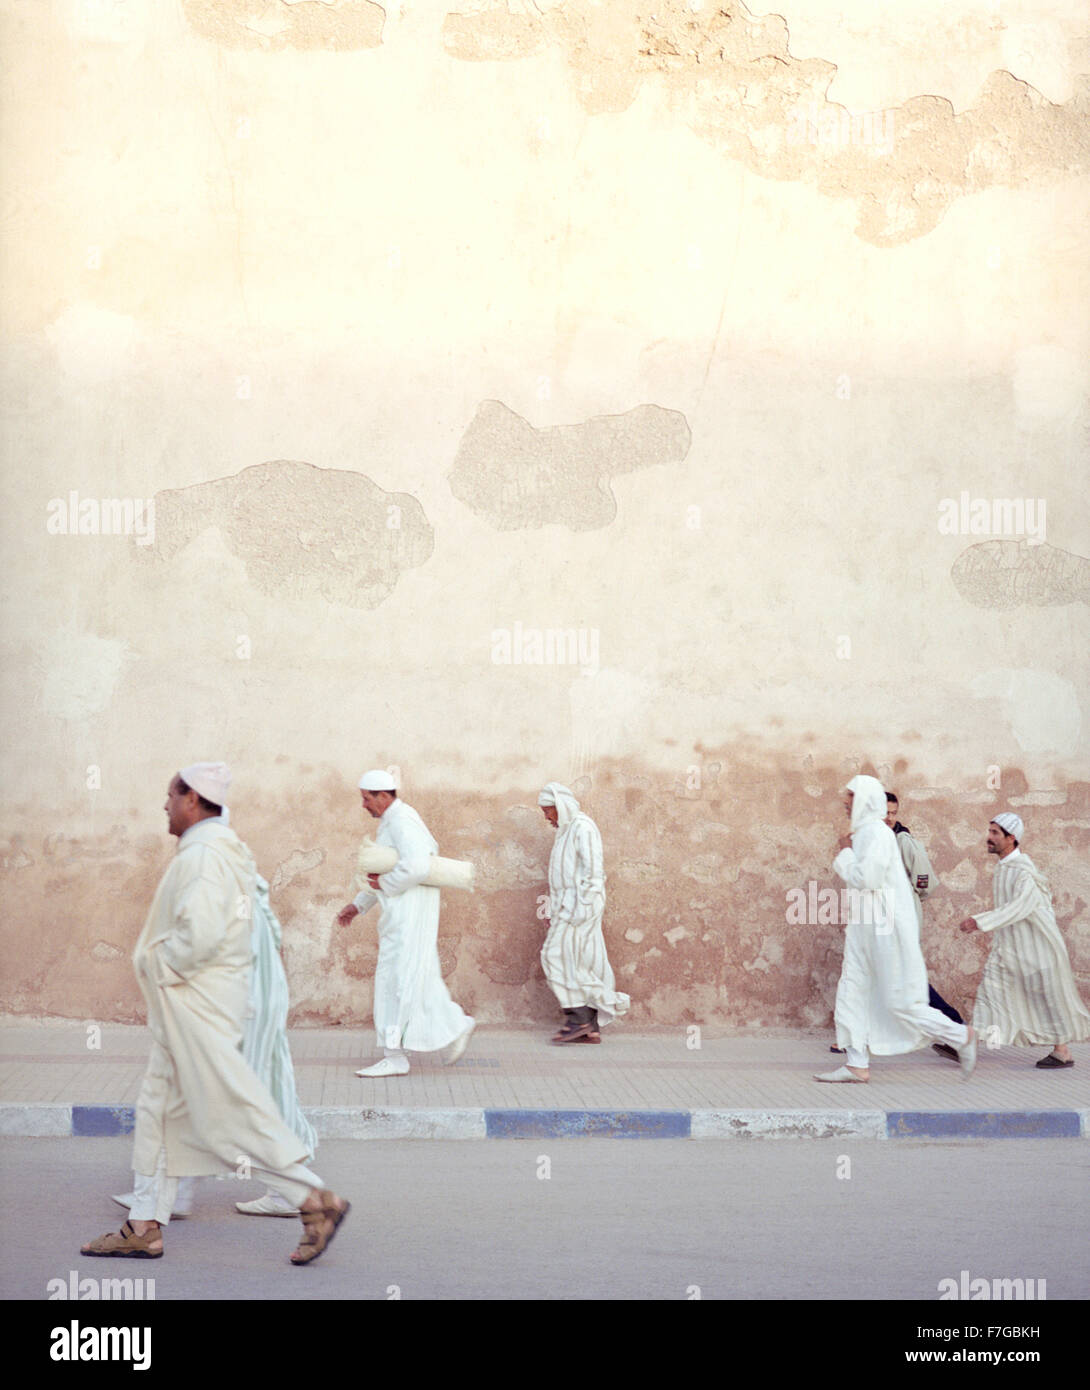 Les hommes musulmans marocains marcher rapidement passé les murs de la ville sur le chemin de la prière du matin. Essaouira, Maroc, Afrique du Nord. Banque D'Images